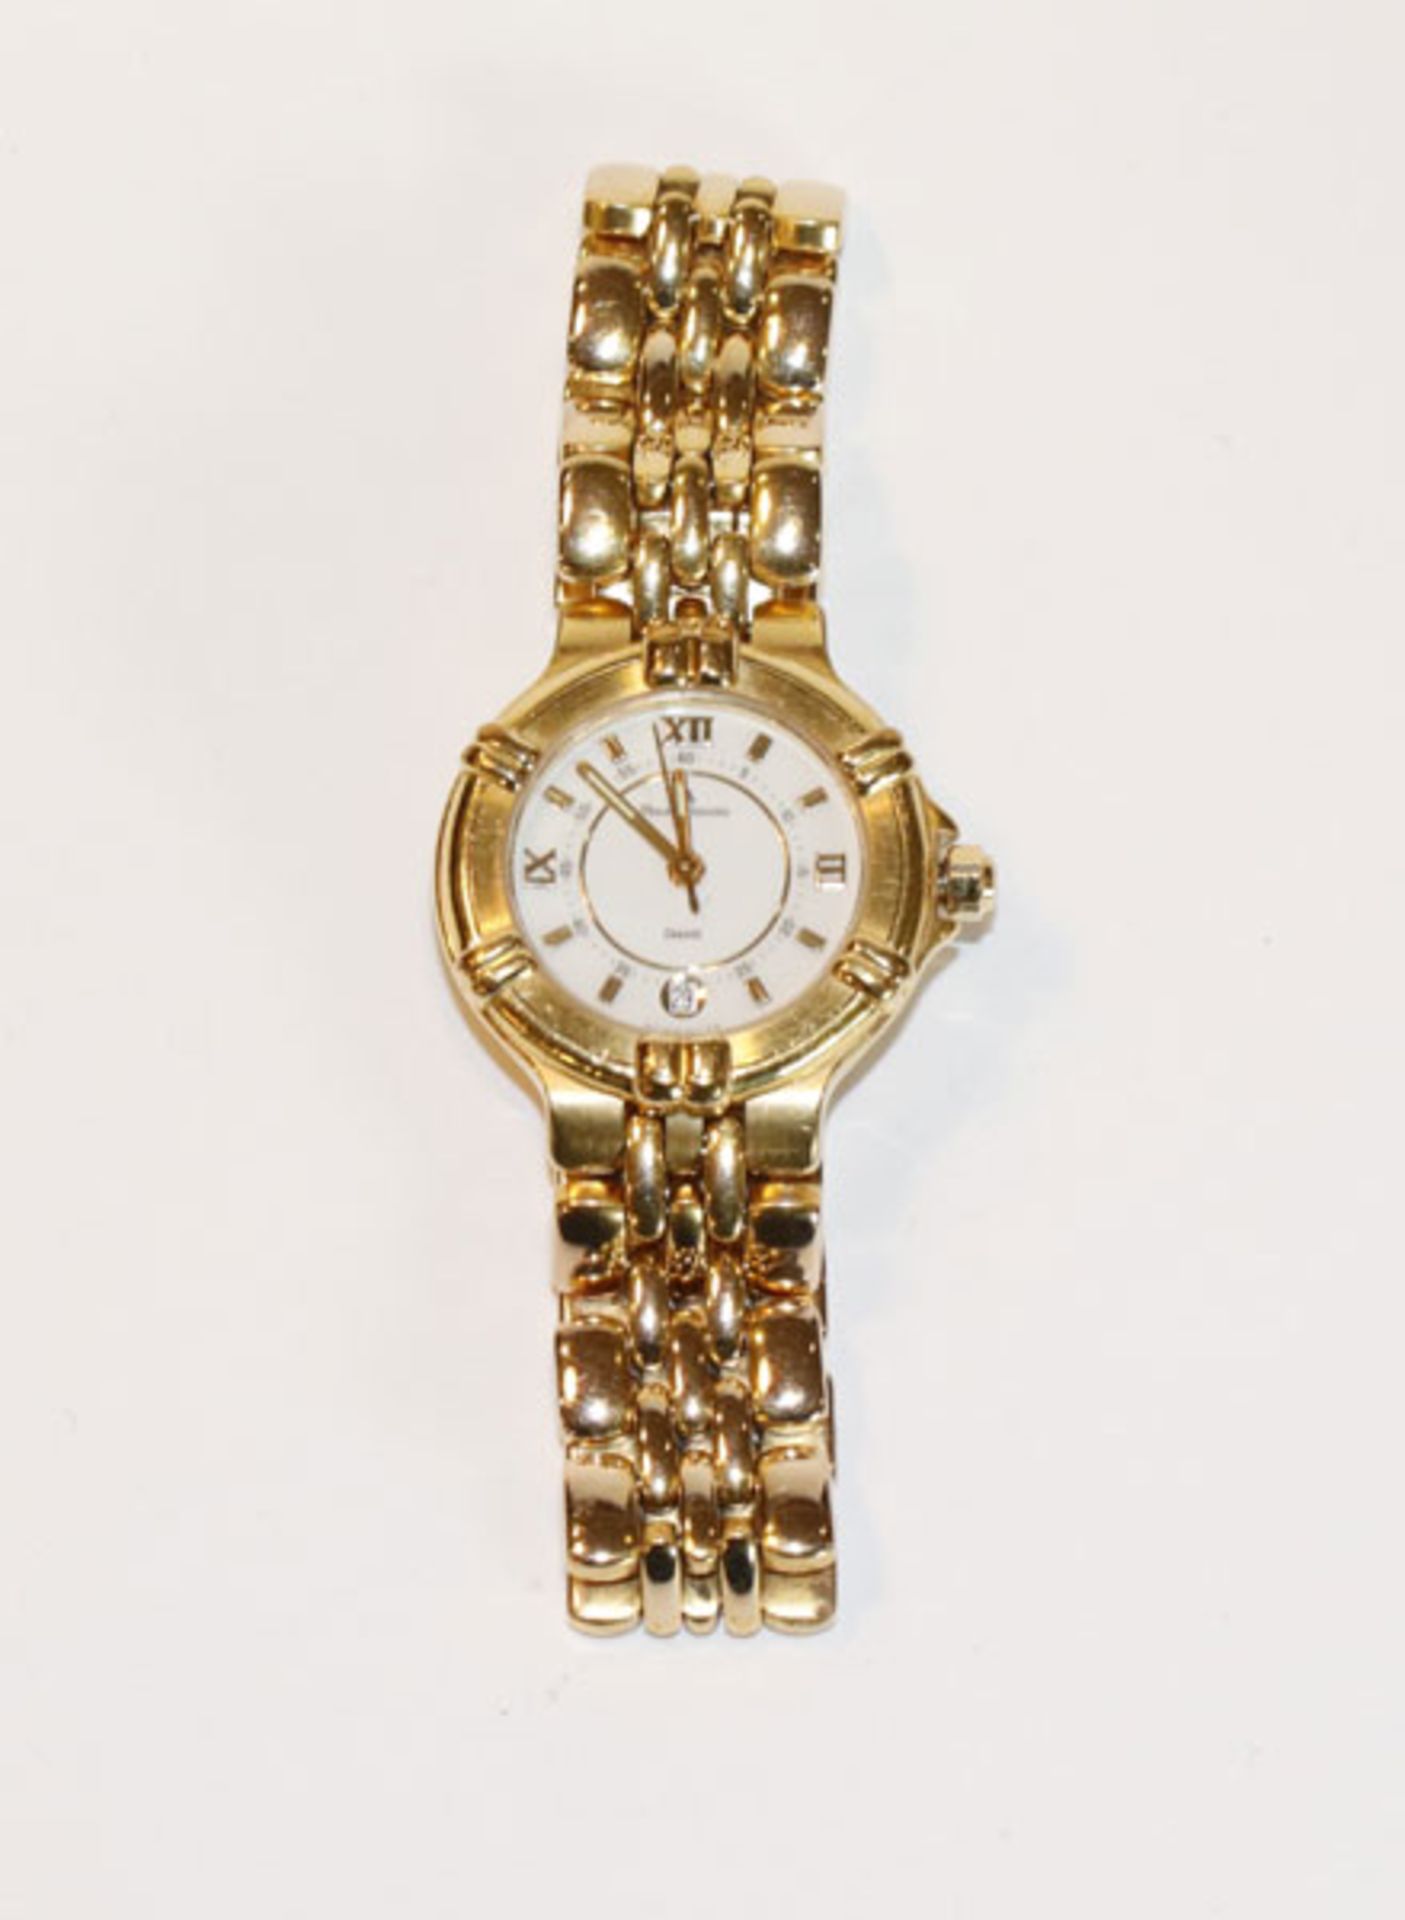 Maurice Lacroix Damen Armbanduhr mit Datumsanzeige, vergoldet, Funktion nicht geprüft, Tragespuren